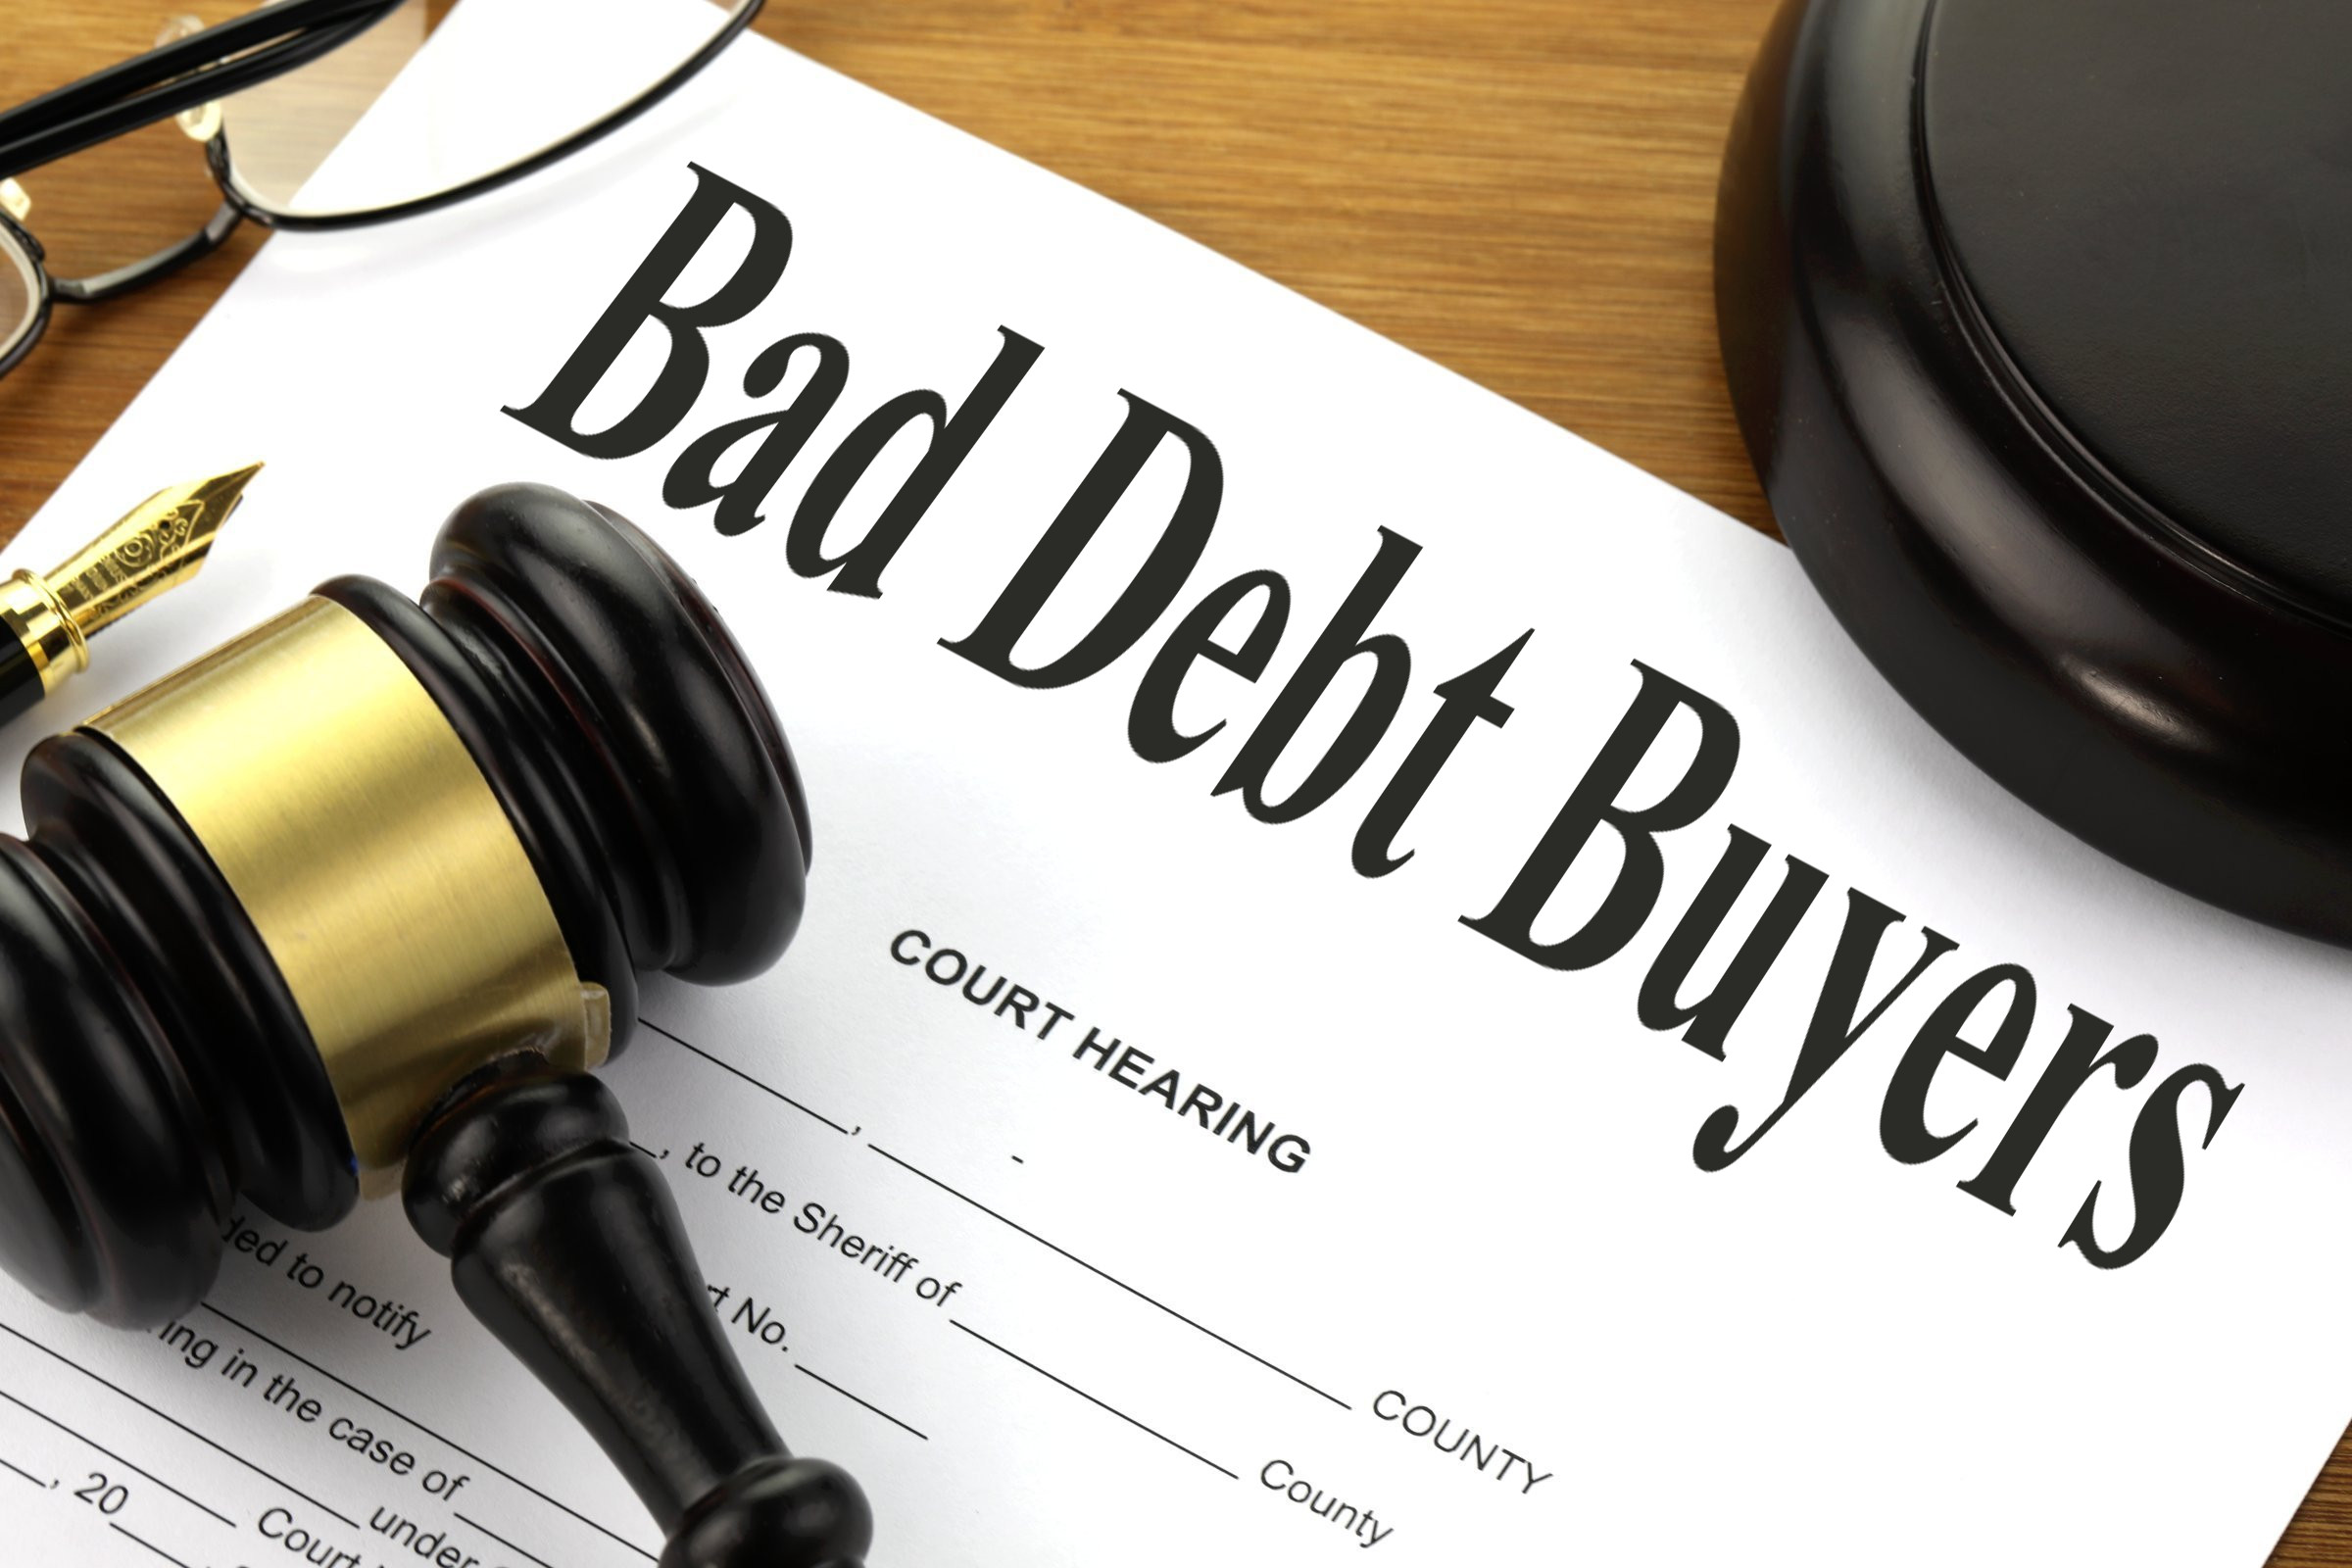 bad debt buyers